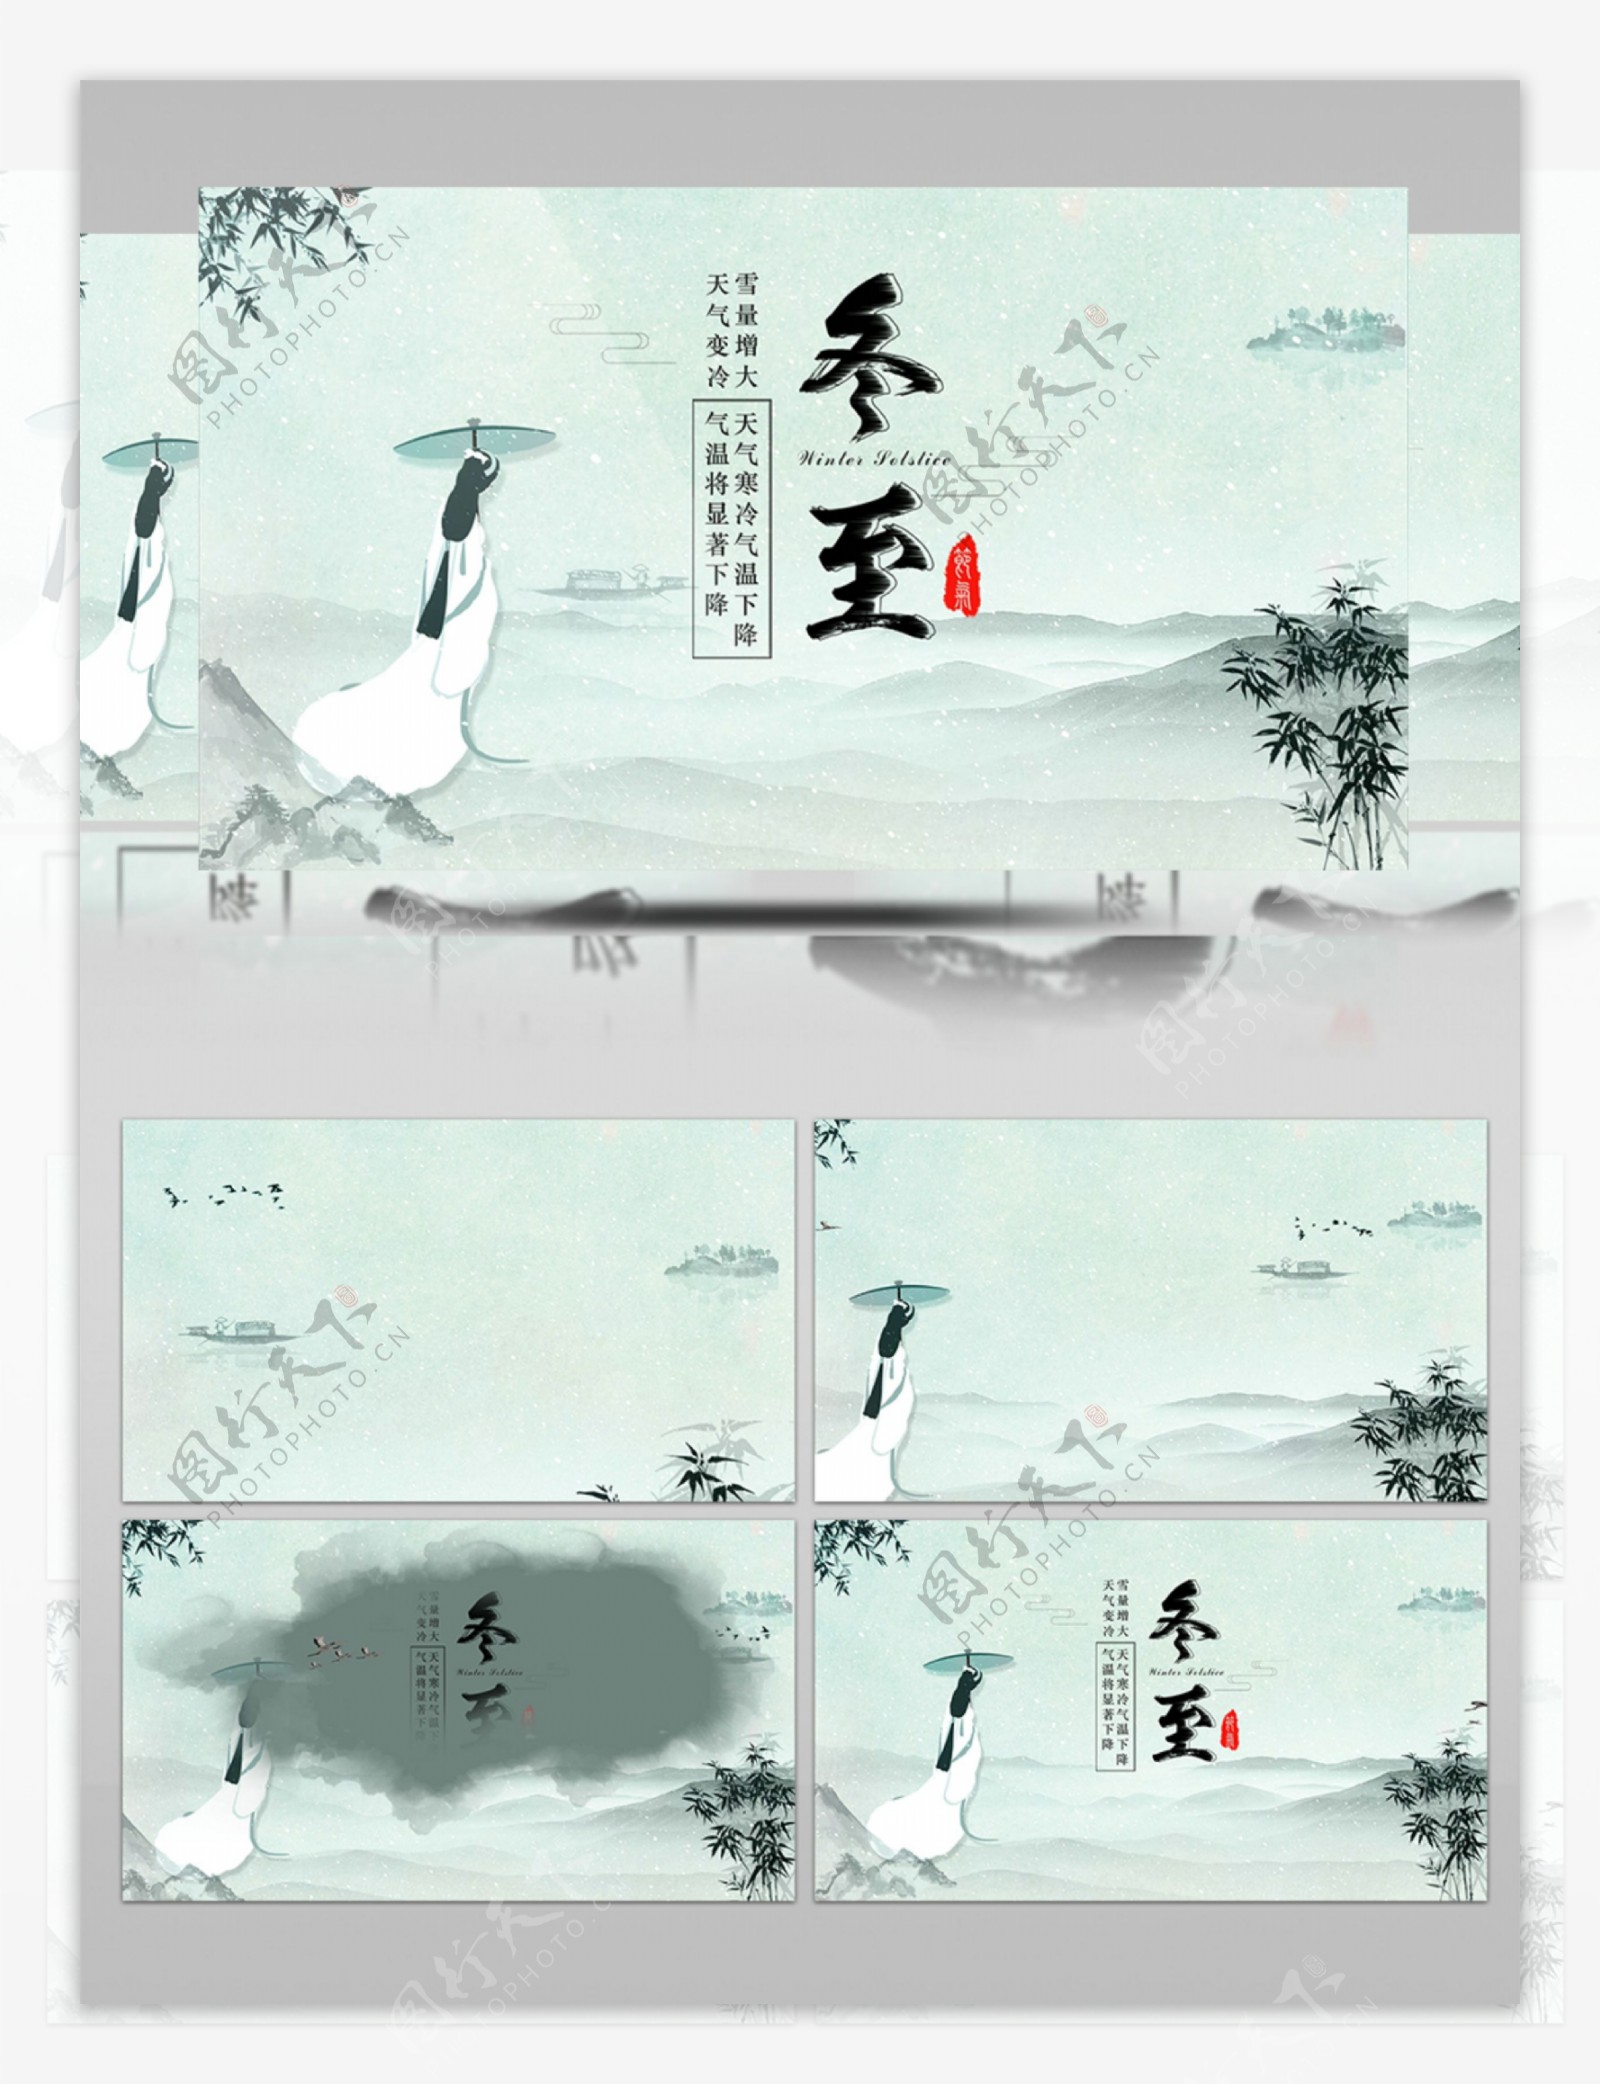 中国风水墨片头定版画面AE模板